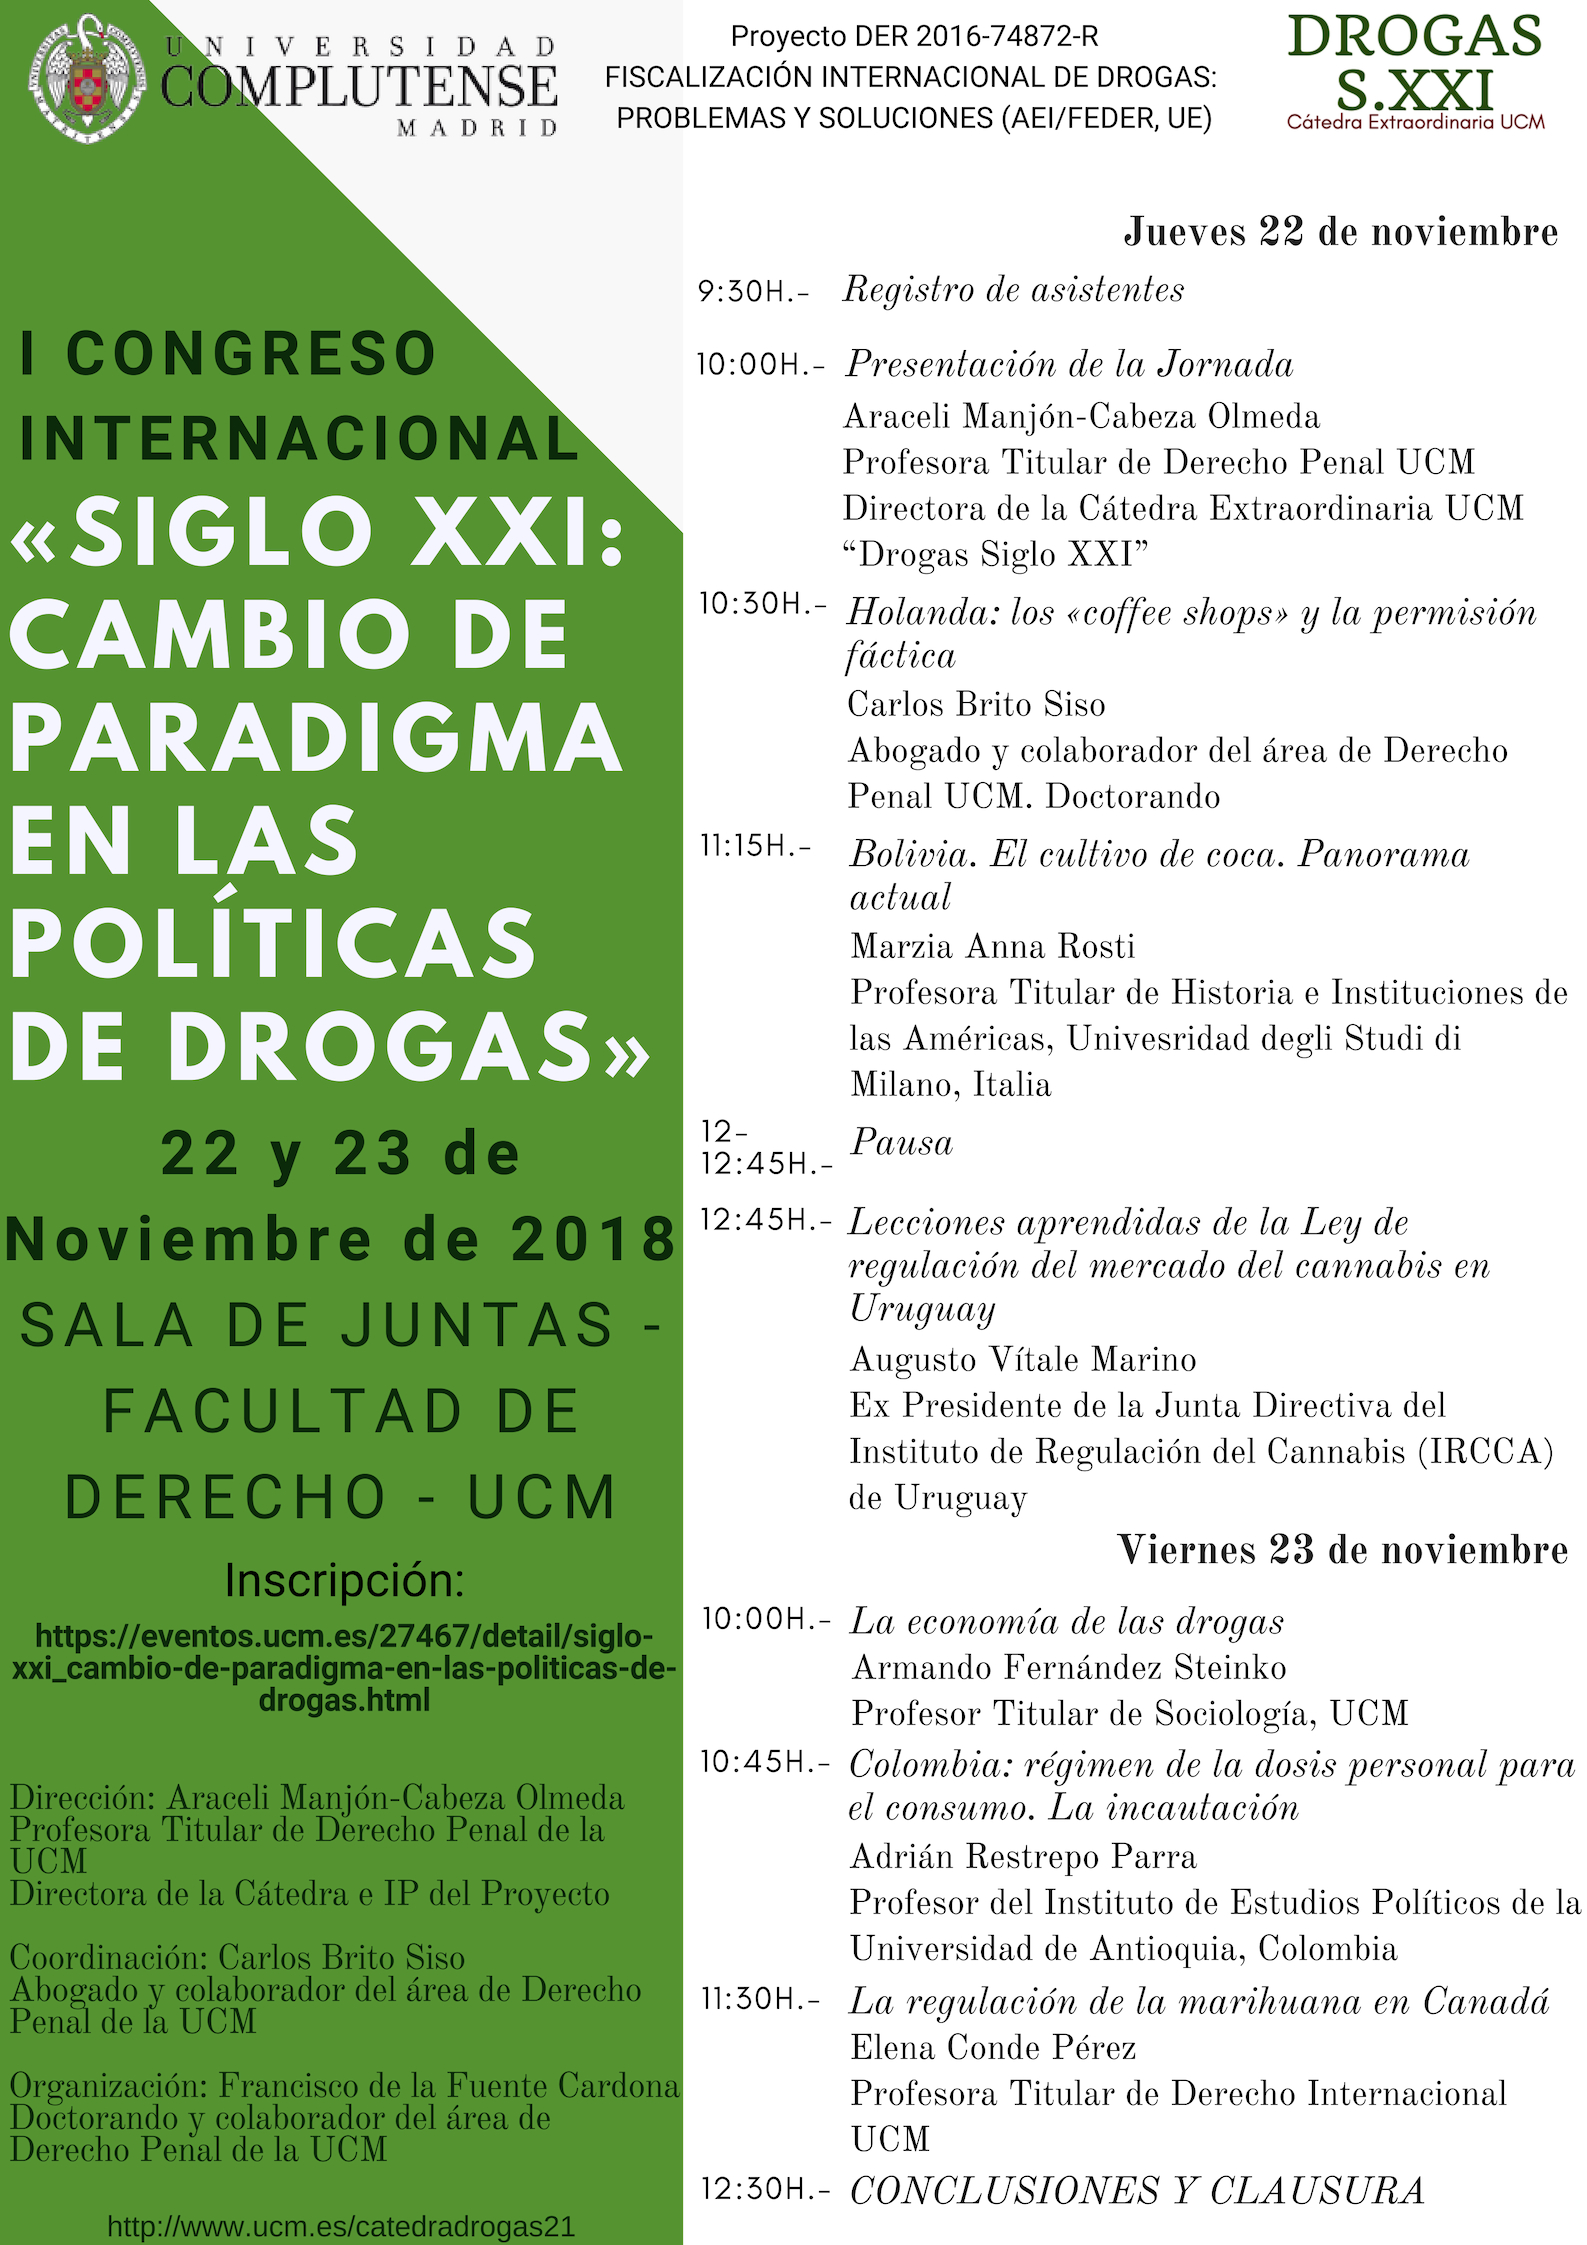 I Congreso Internacional «Siglo XXI: Cambio de Paradigma en las Políticas de Drogas», Madrid 22 y 23 de noviembre - 2